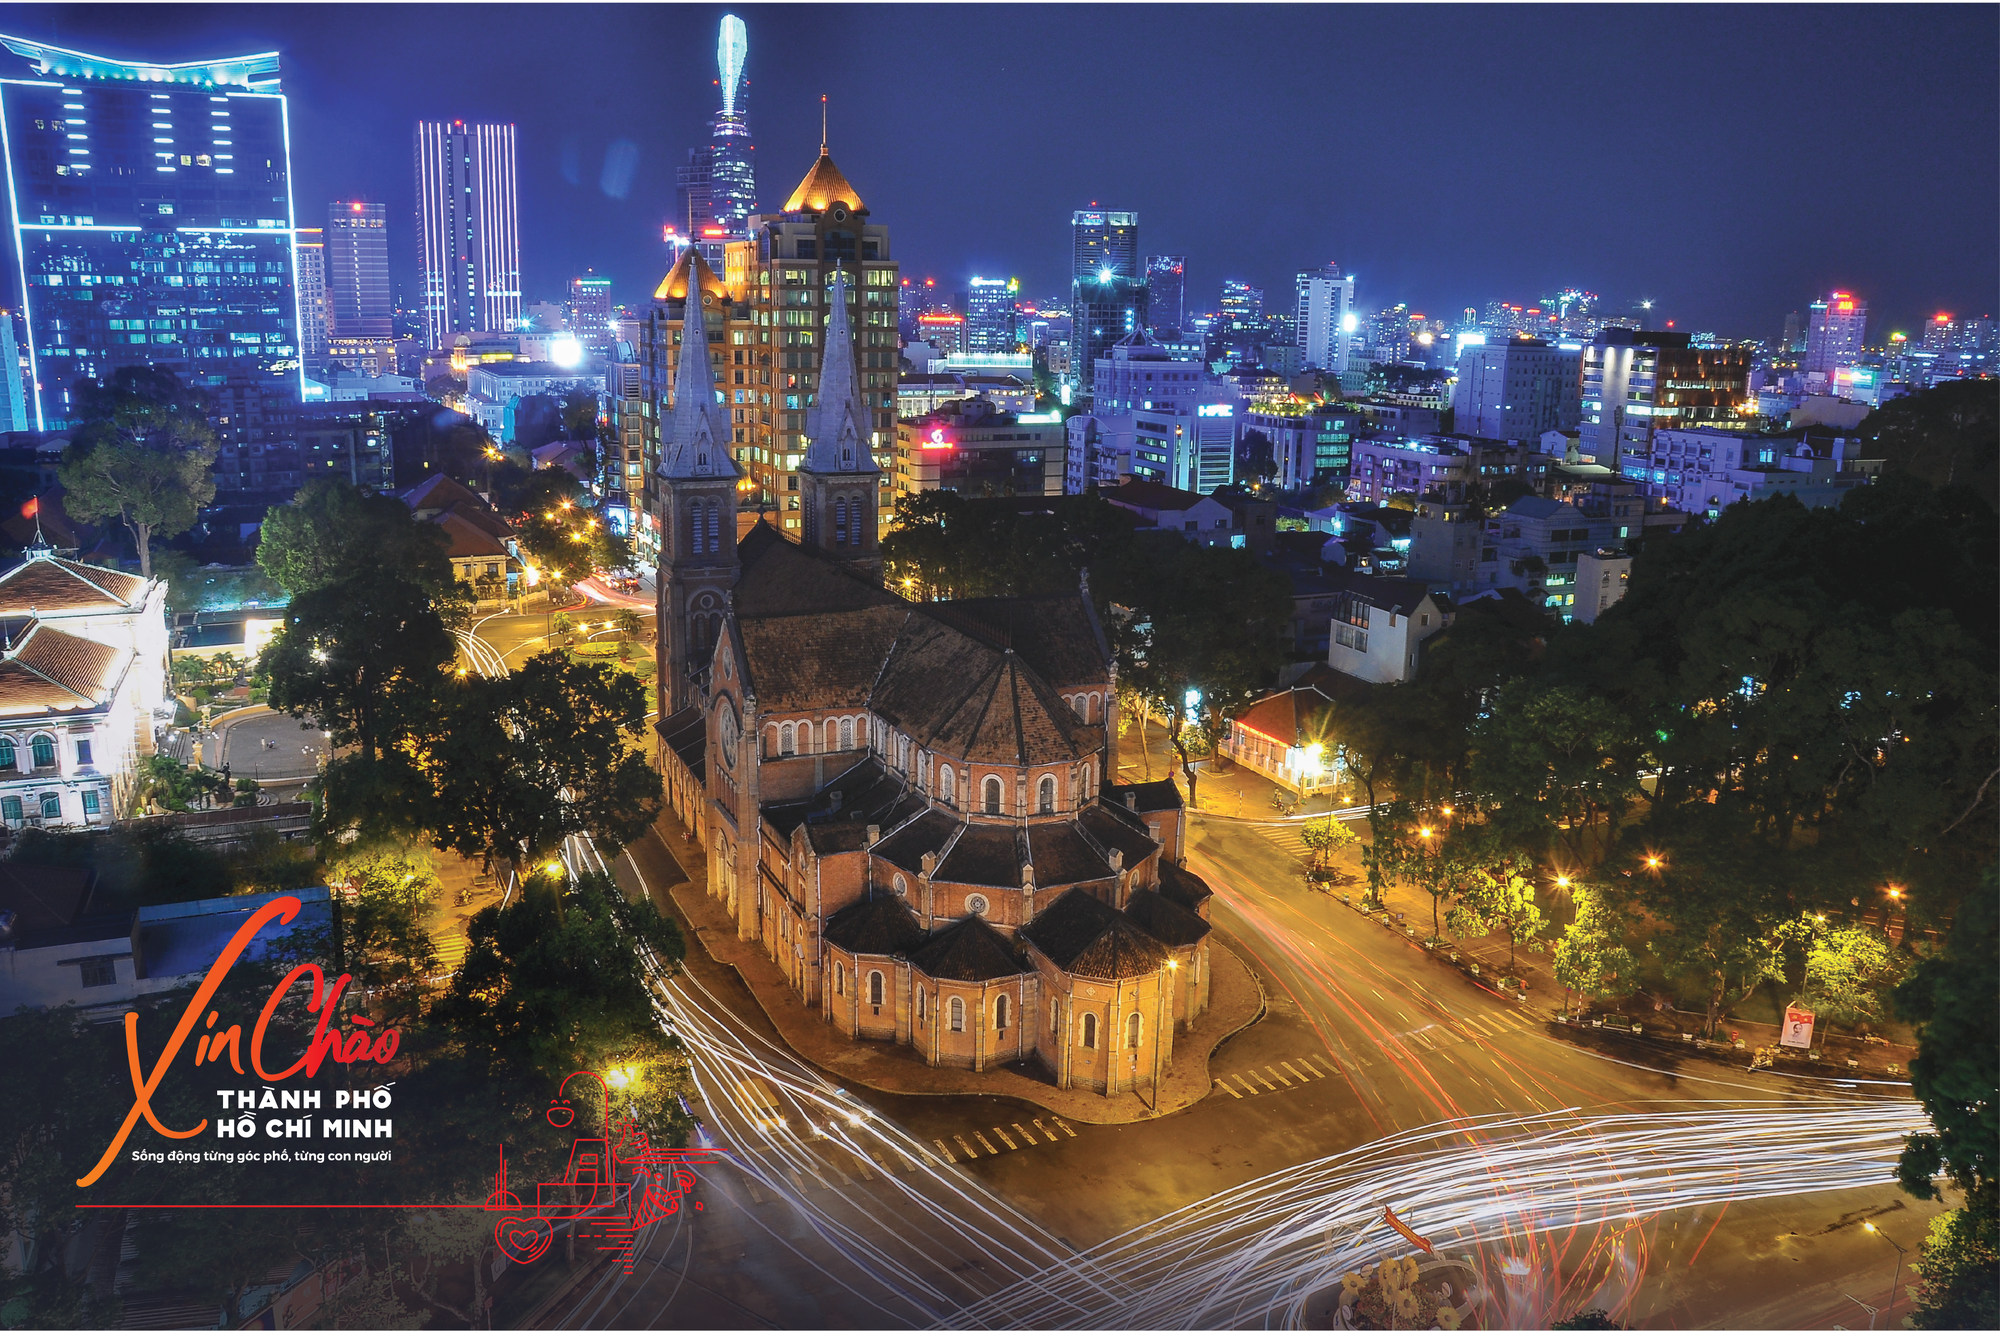 Du lịch TP HCM tung chiến dịch quảng bá mới “Hello HoChiminh city” - Báo  Người lao động